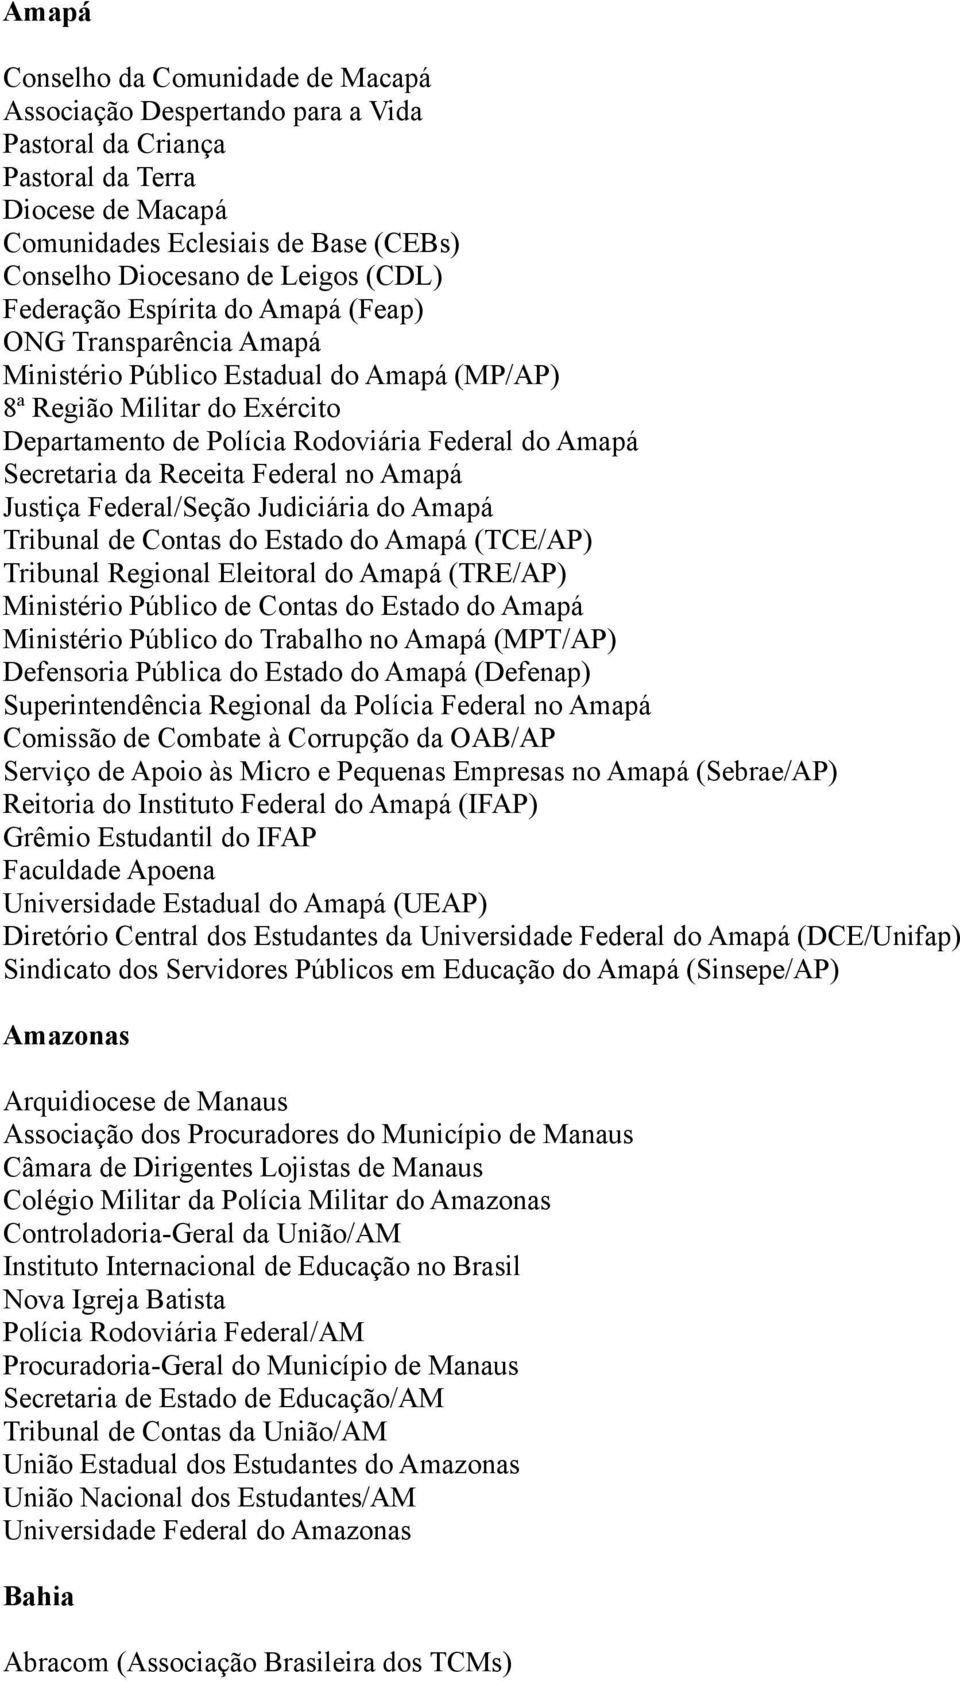 Secretaria da Receita Federal no Amapá Justiça Federal/Seção Judiciária do Amapá Tribunal de Contas do Estado do Amapá (TCE/AP) Tribunal Regional Eleitoral do Amapá (TRE/AP) Ministério Público de